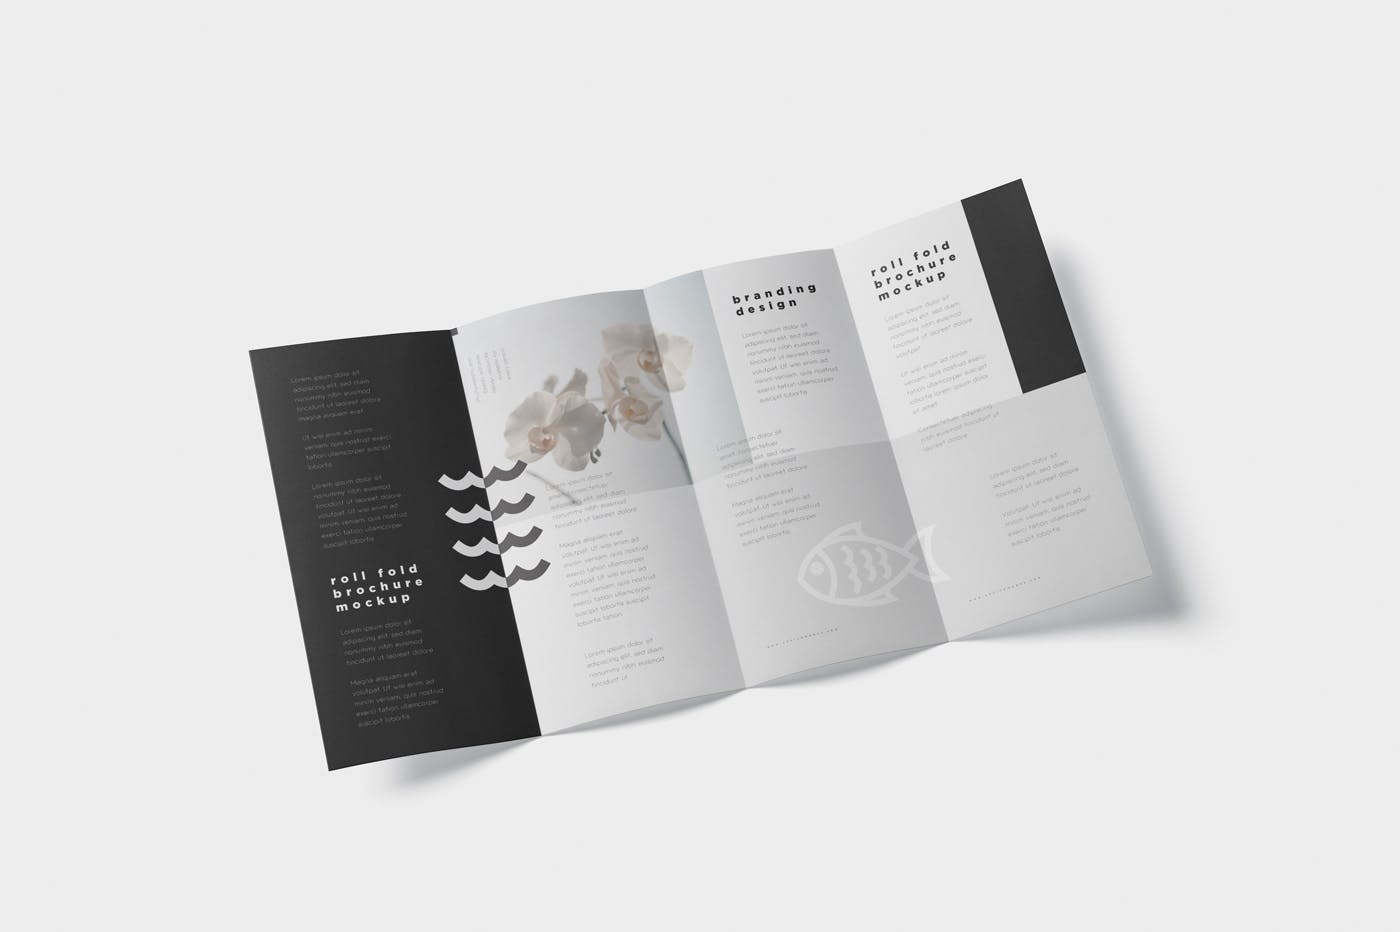 折叠设计风格企业传单/宣传册设计样机素材库精选 Roll-Fold Brochure Mockup – DL DIN Lang Size插图(2)